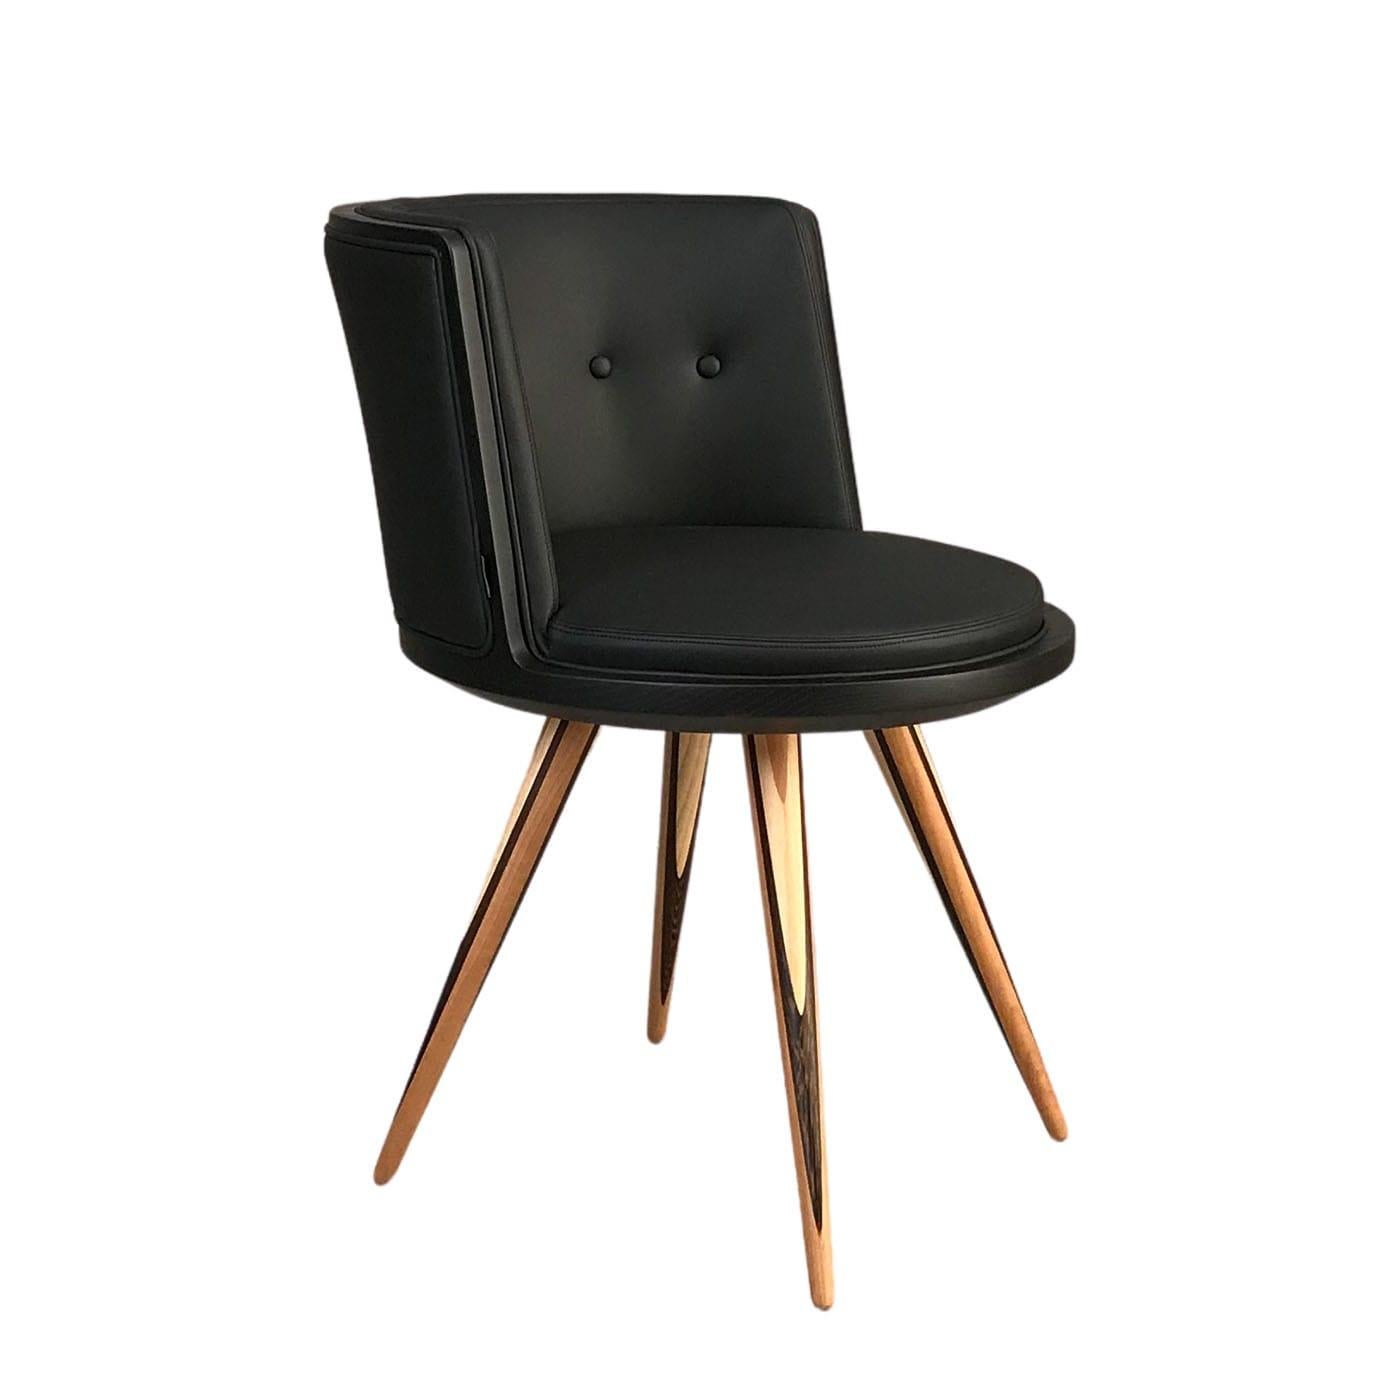 Un accent élégant pour un bureau ou un salon contemporain, cette chaise stupéfiante respire le confort et la sophistication. Fabriquée à la main en bois de frêne laqué dans une teinte noire, l'assise ronde est doucement paddée et tapissée de cuir